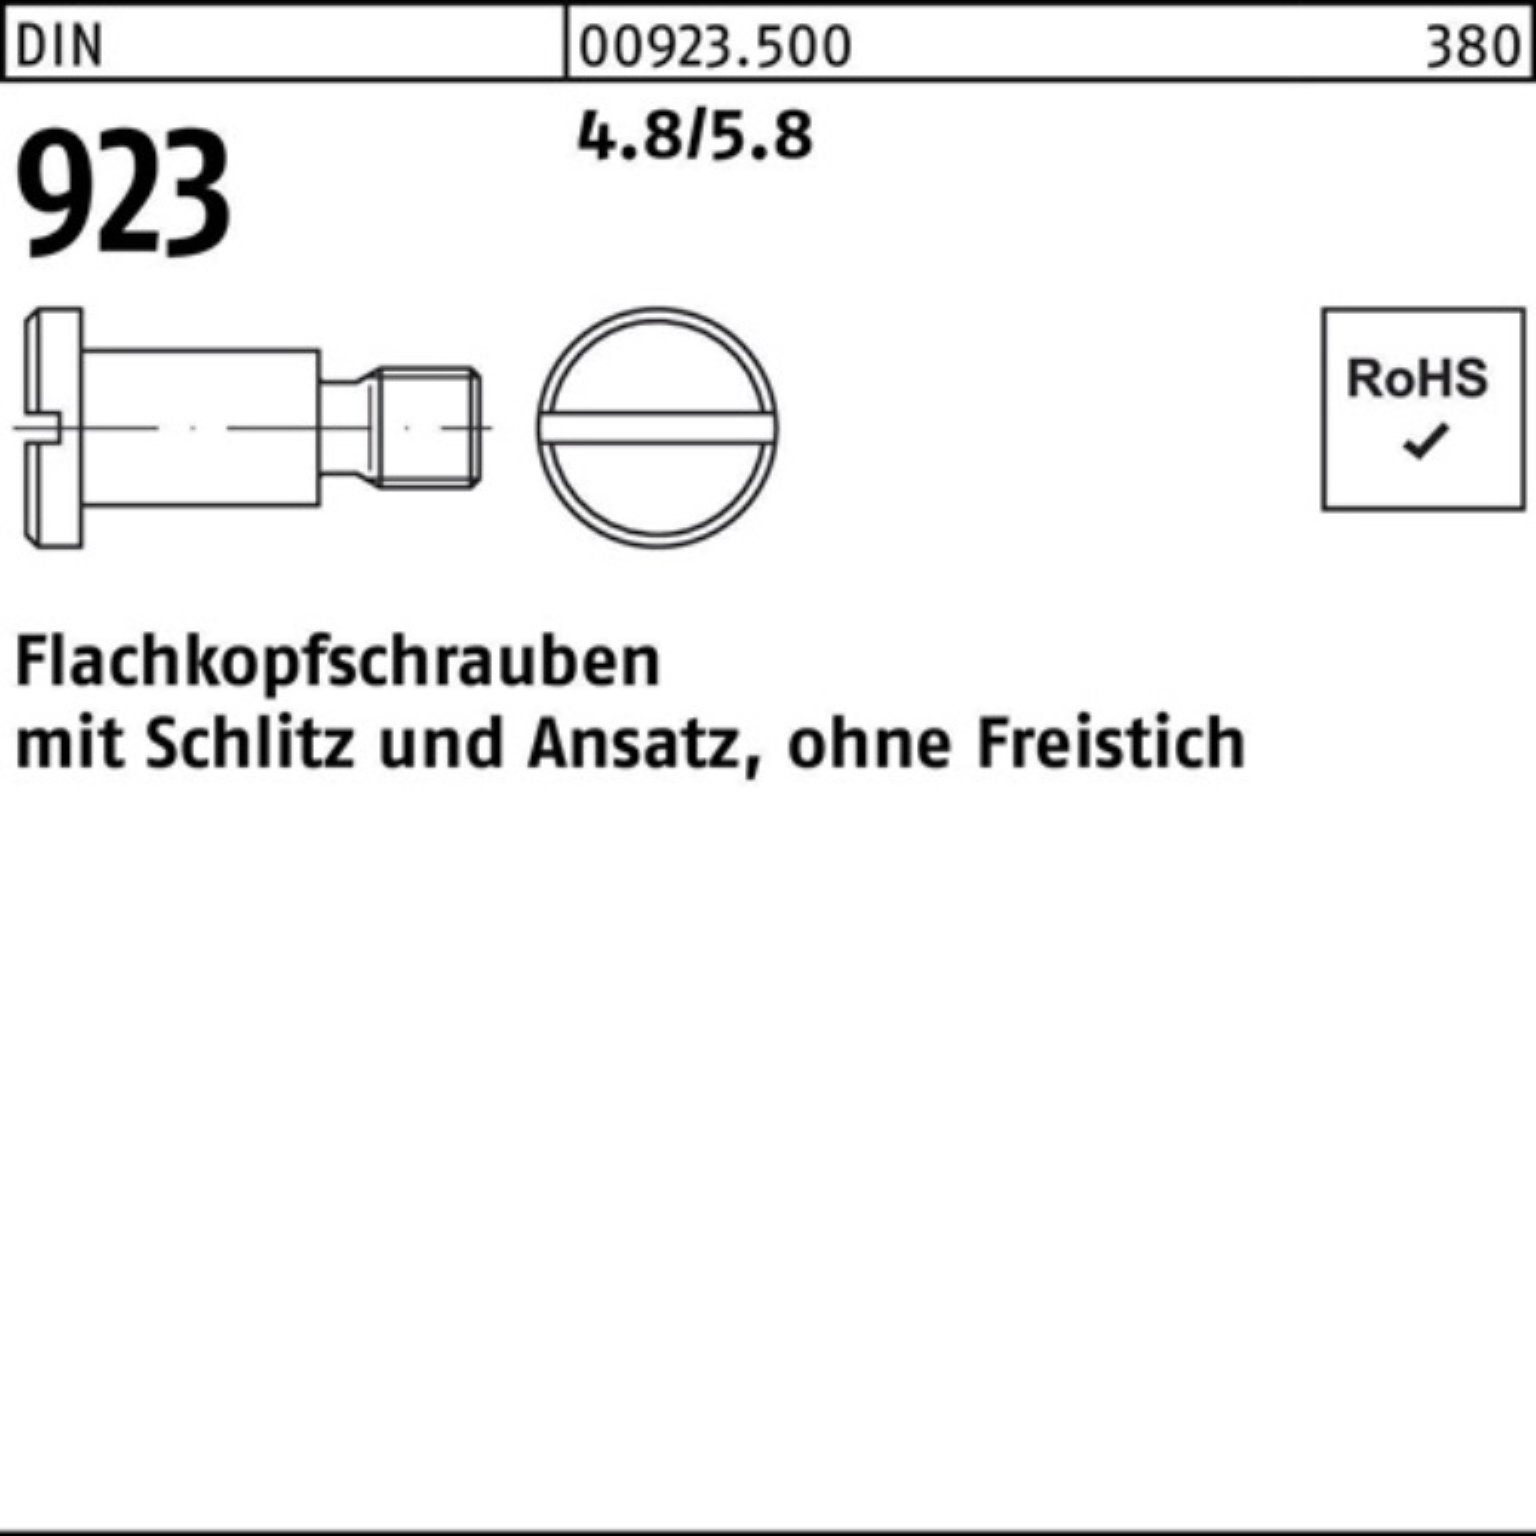 Reyher Schraube Pack Flachkopfschraube 923 4.8/5.8 M8x25x11,0 100er Schlitz/Ansatz DIN